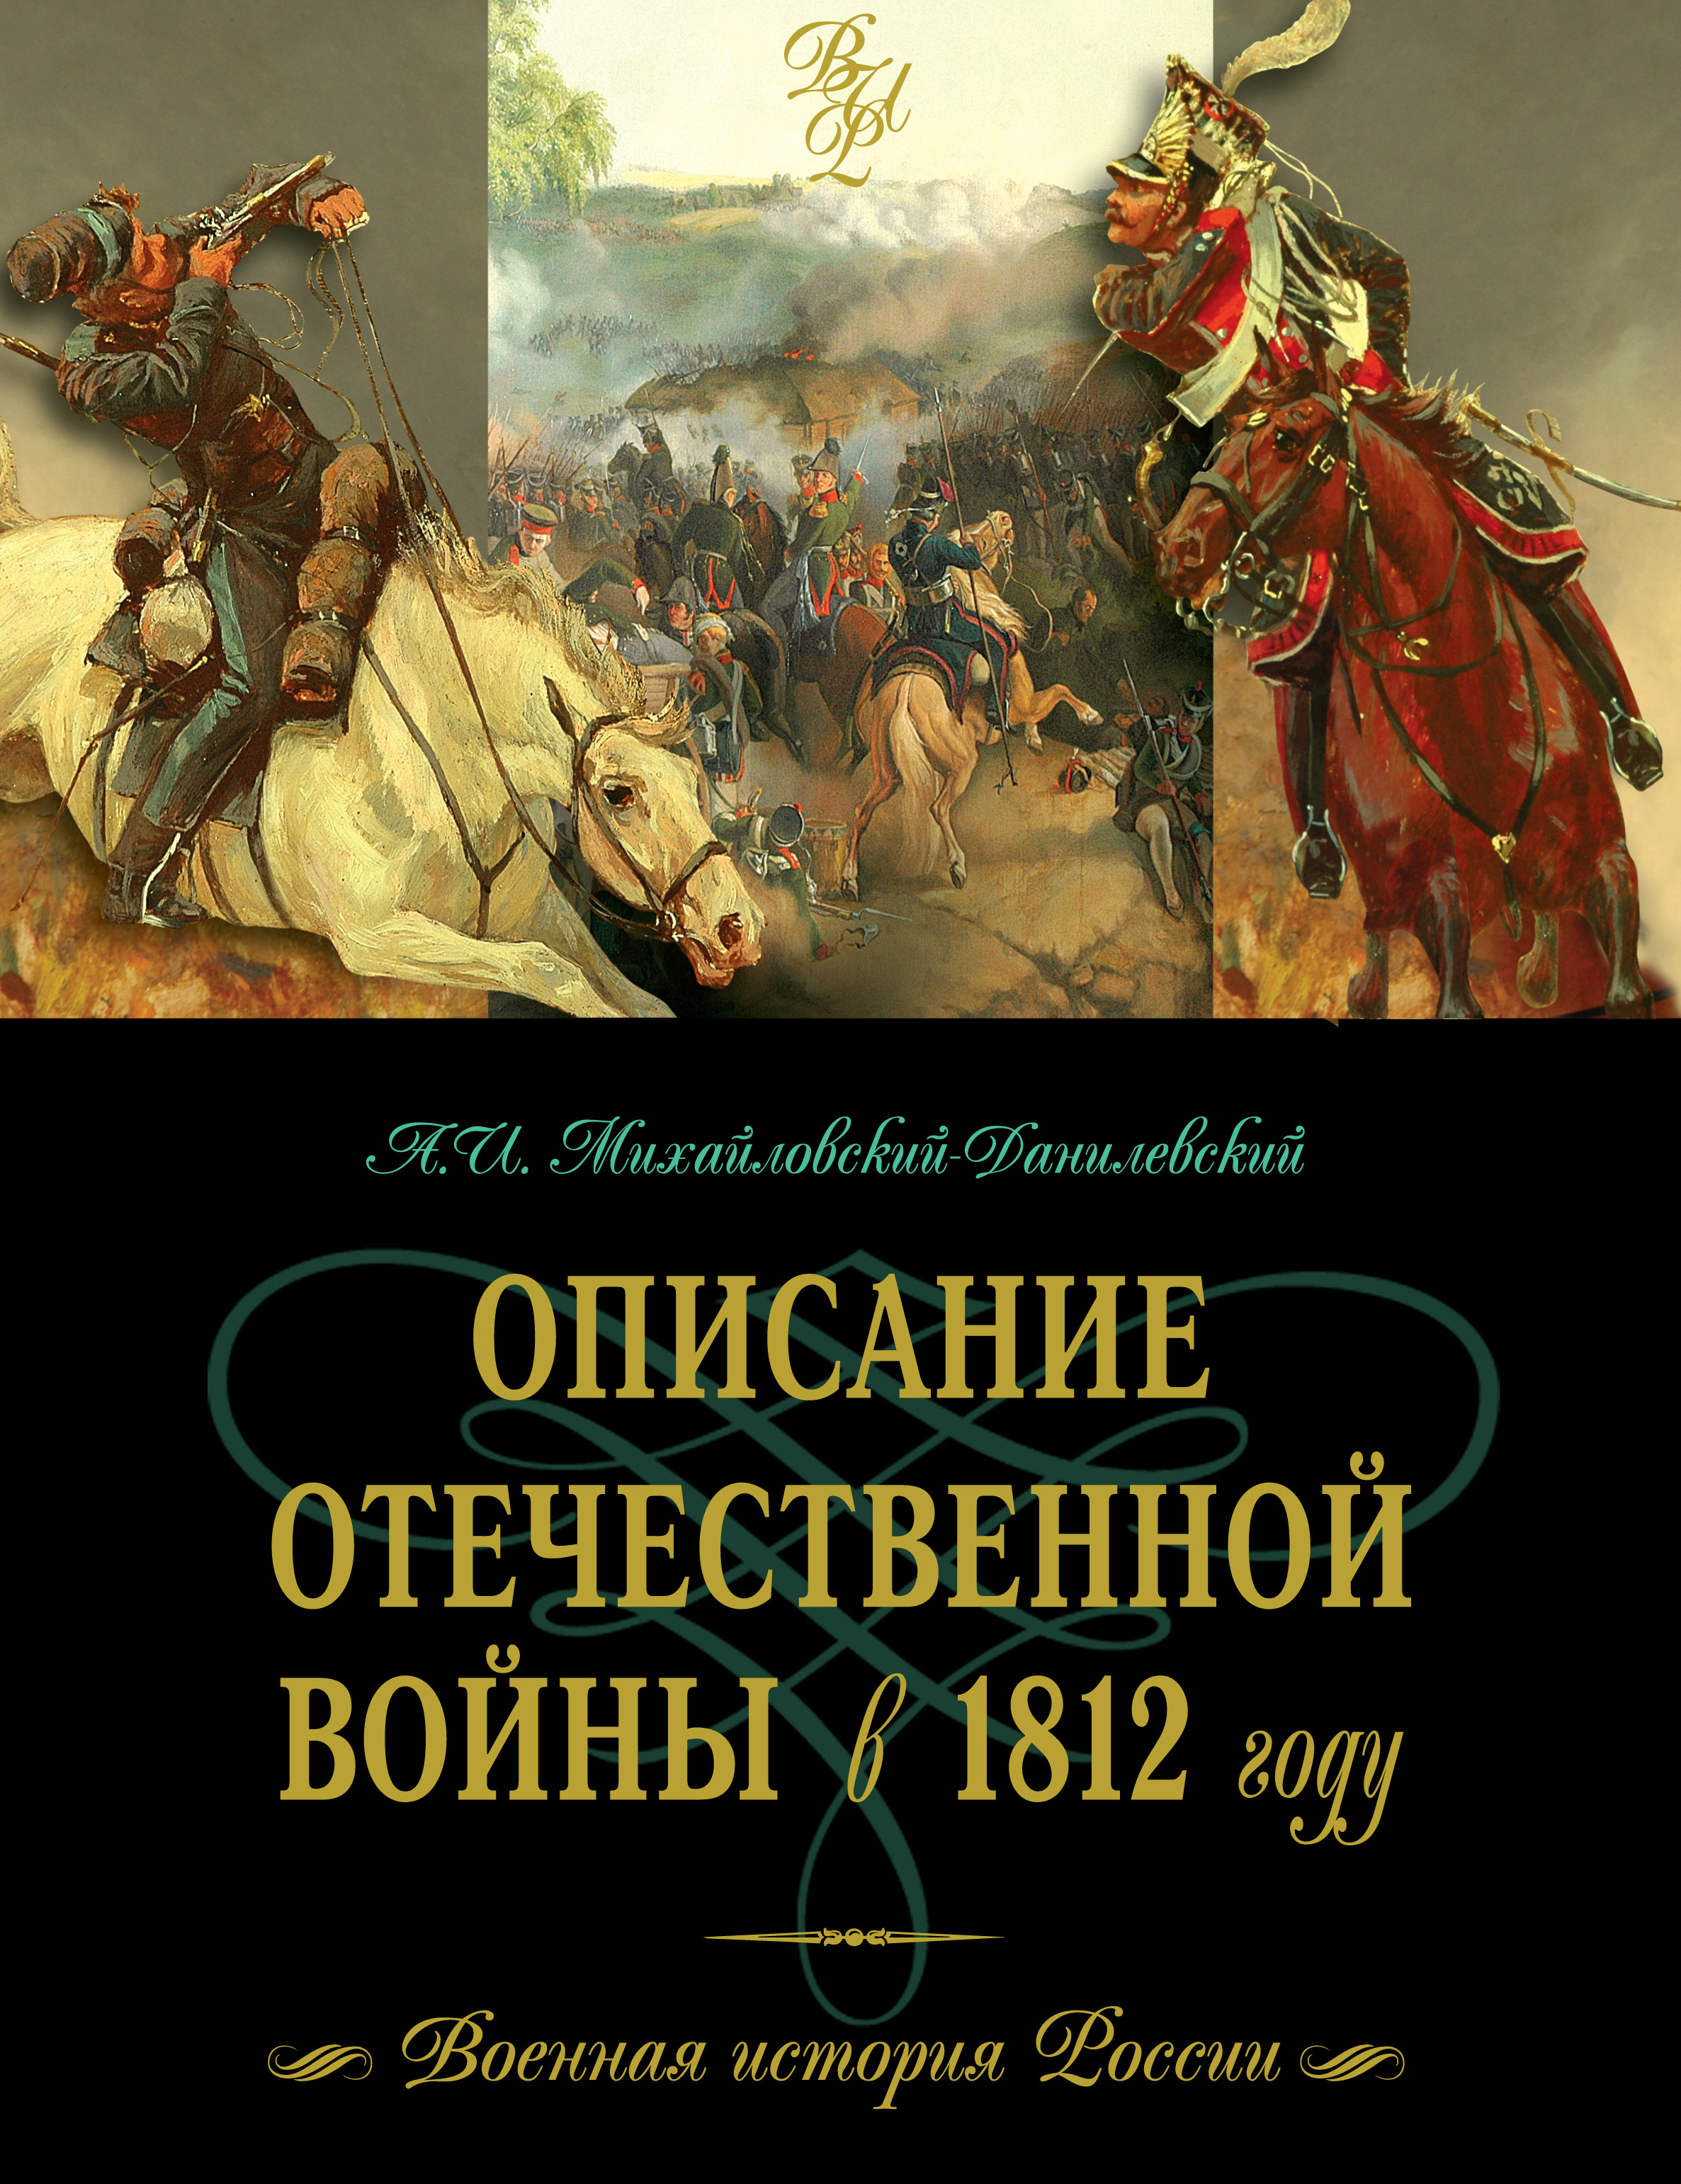 Первый автор исторических романов. Михайловский Данилевский описание войны 1812 года. 1812 Книга историческая. Книги о войне 1812 года.